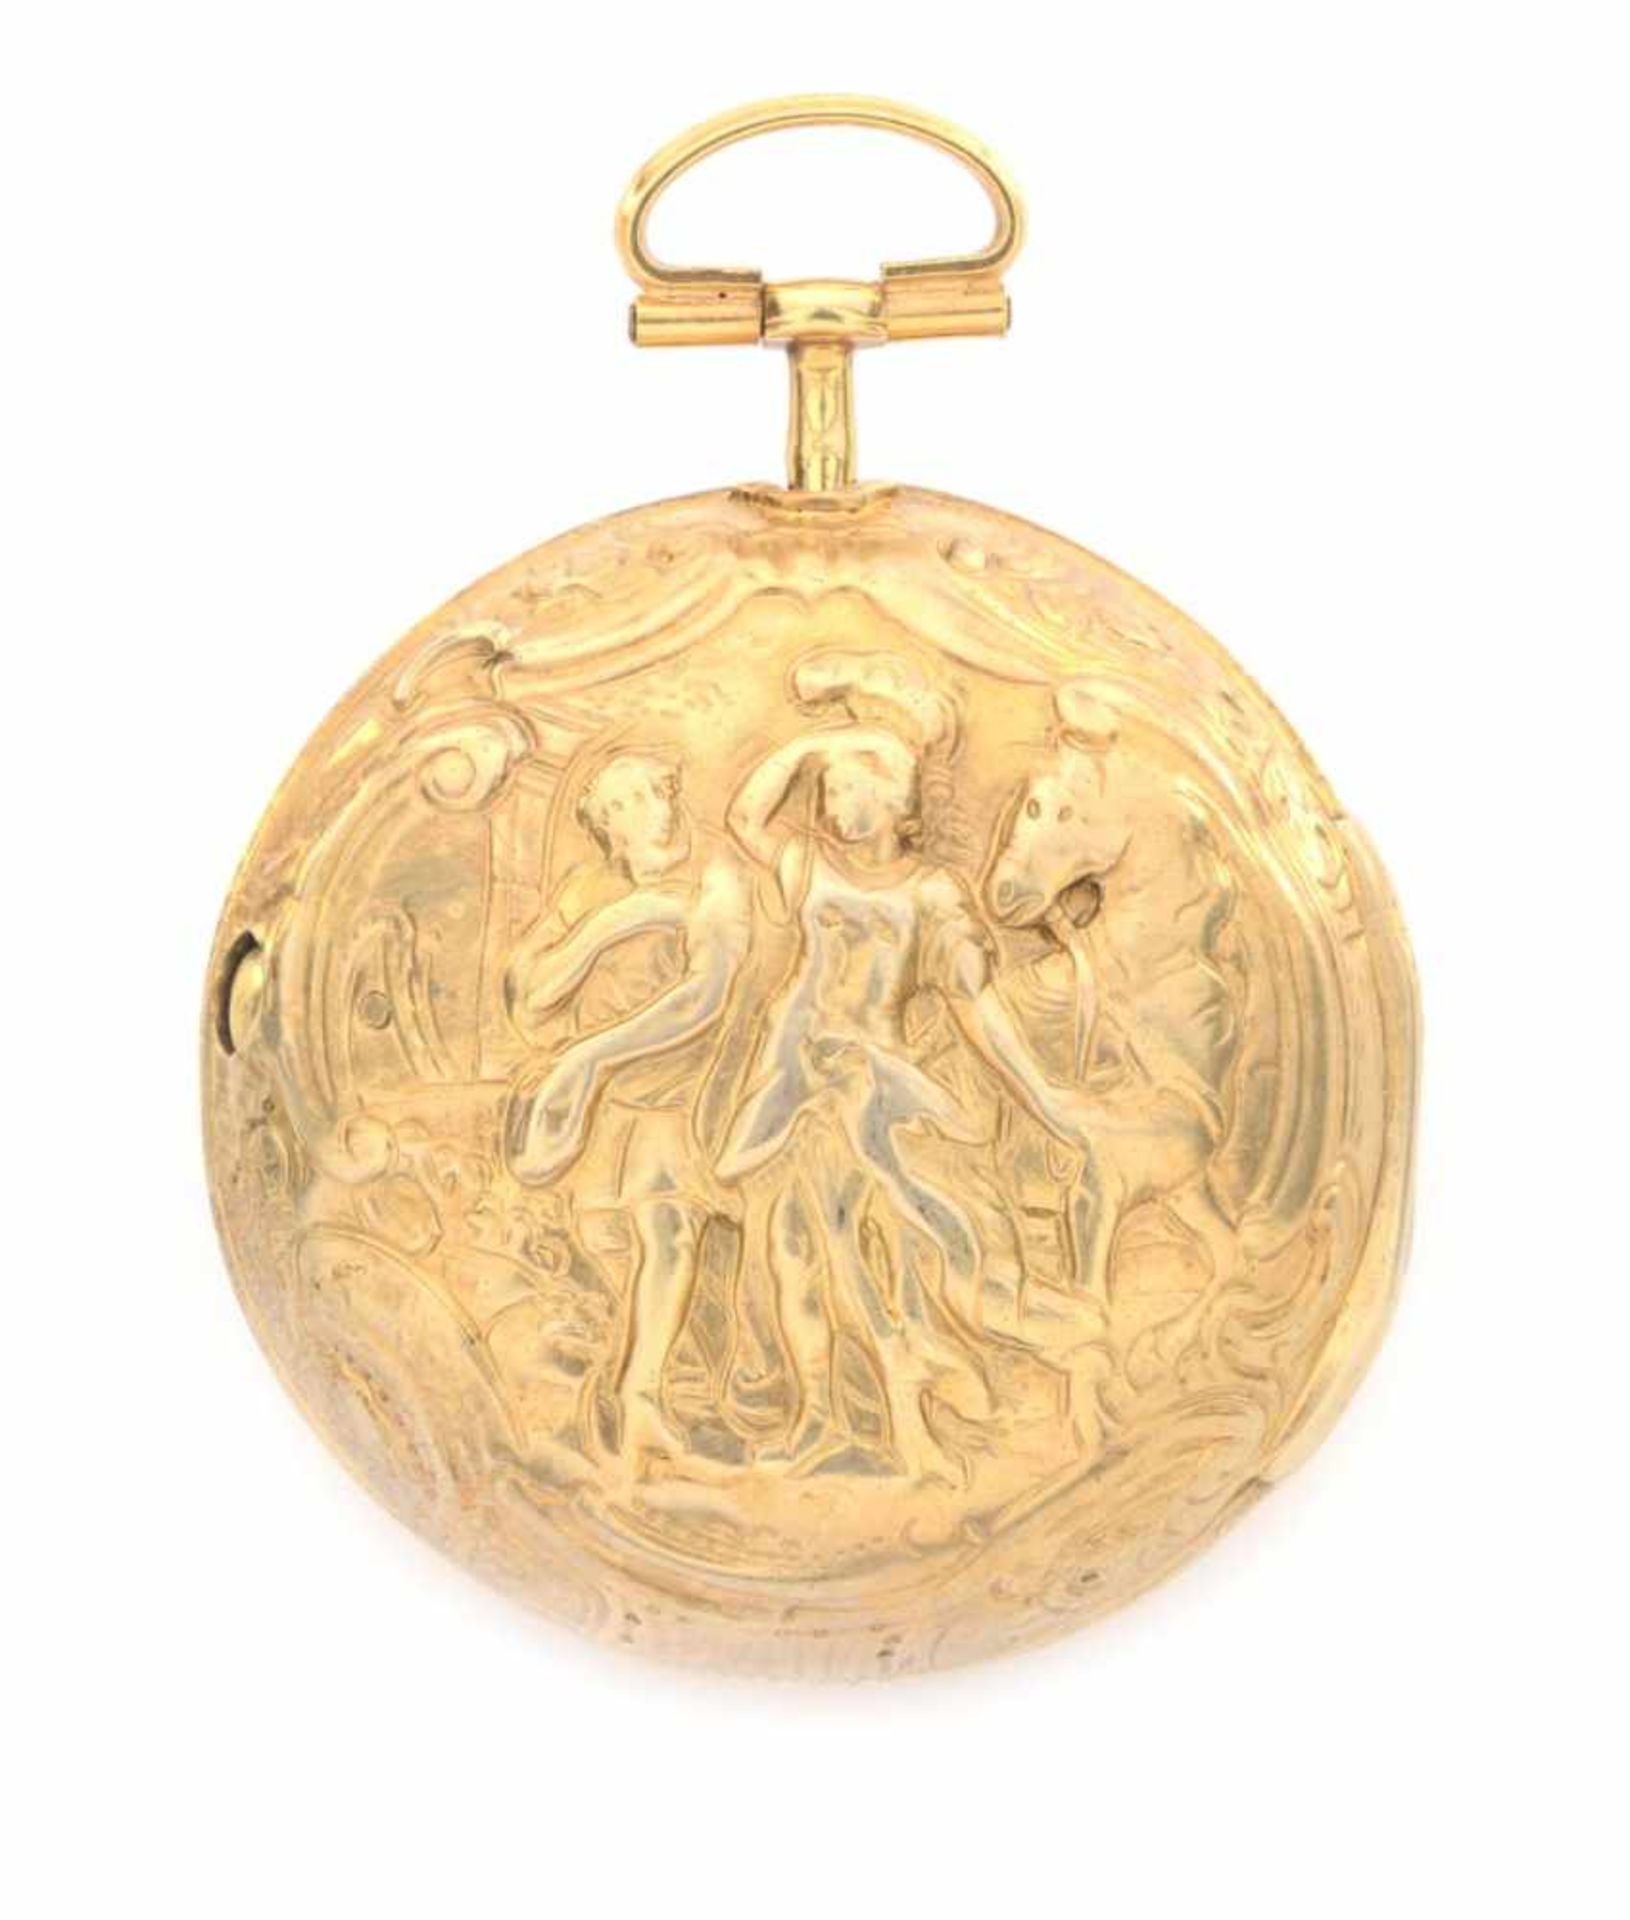 SILBERNE TASCHENUHR MIT ÜBERGEHÄUSE1788Silberne Taschenuhr, vergoldet, Repoussée-Übergehäuse mit